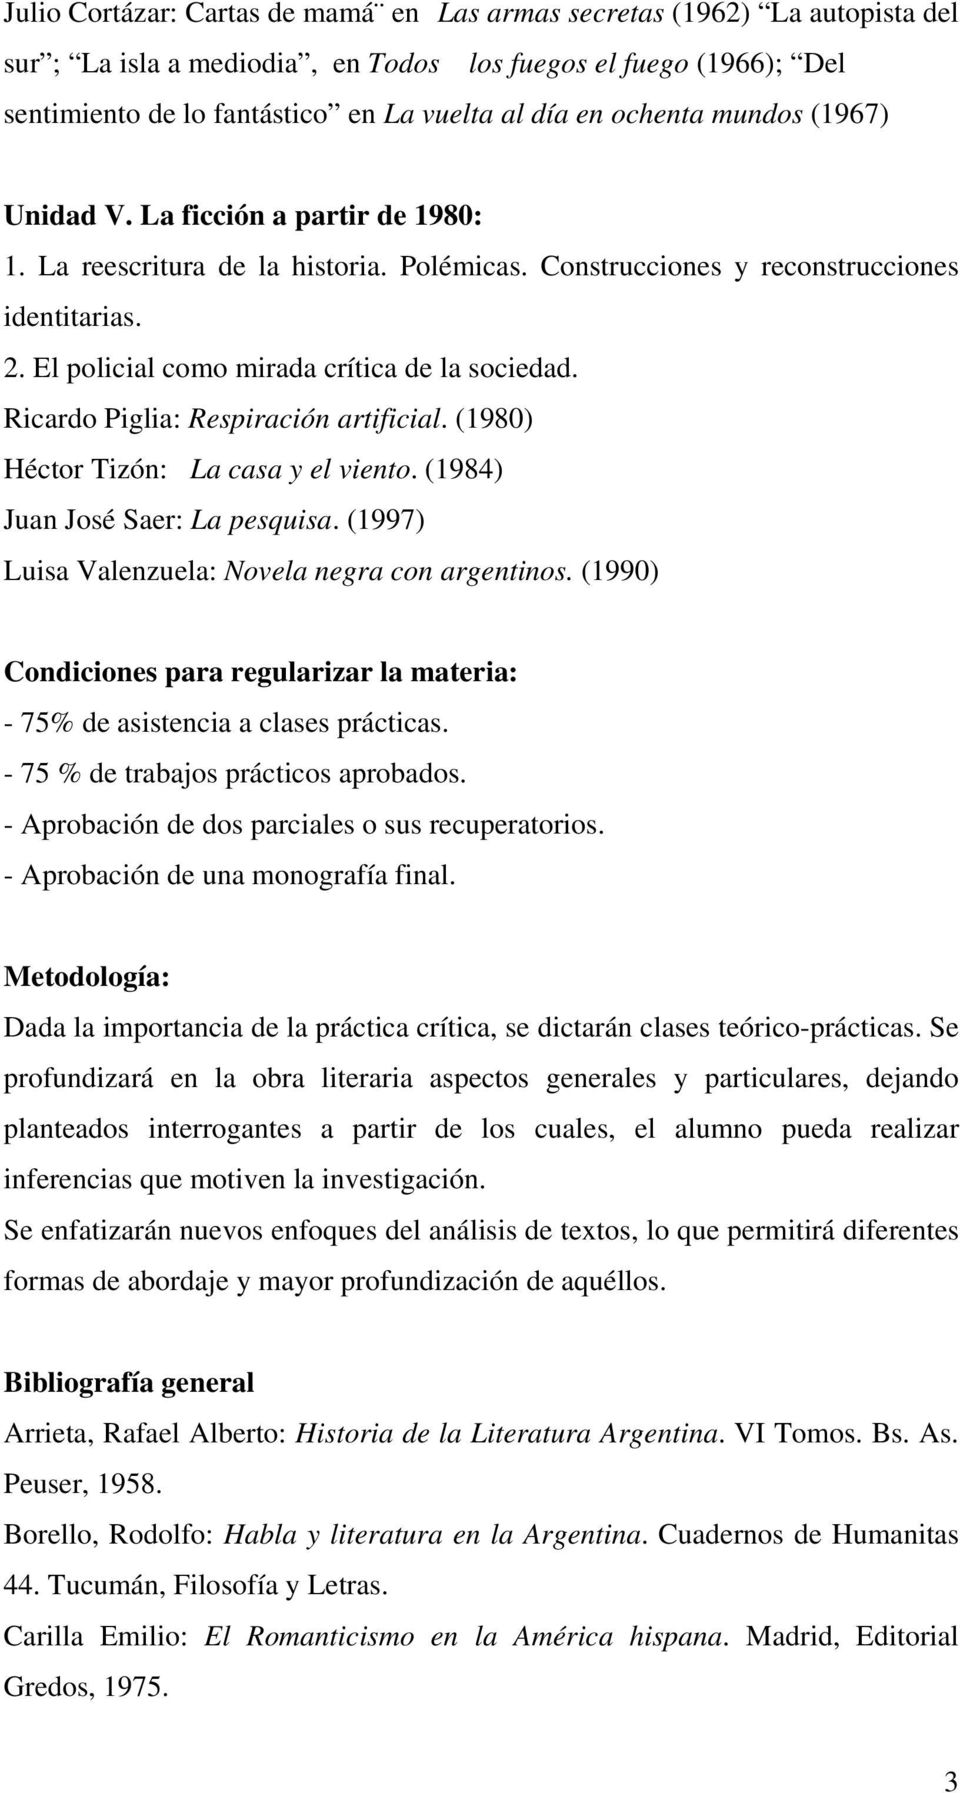 El policial como mirada crítica de la sociedad. Ricardo Piglia: Respiración artificial. (1980) Héctor Tizón: La casa y el viento. (1984) Juan José Saer: La pesquisa.